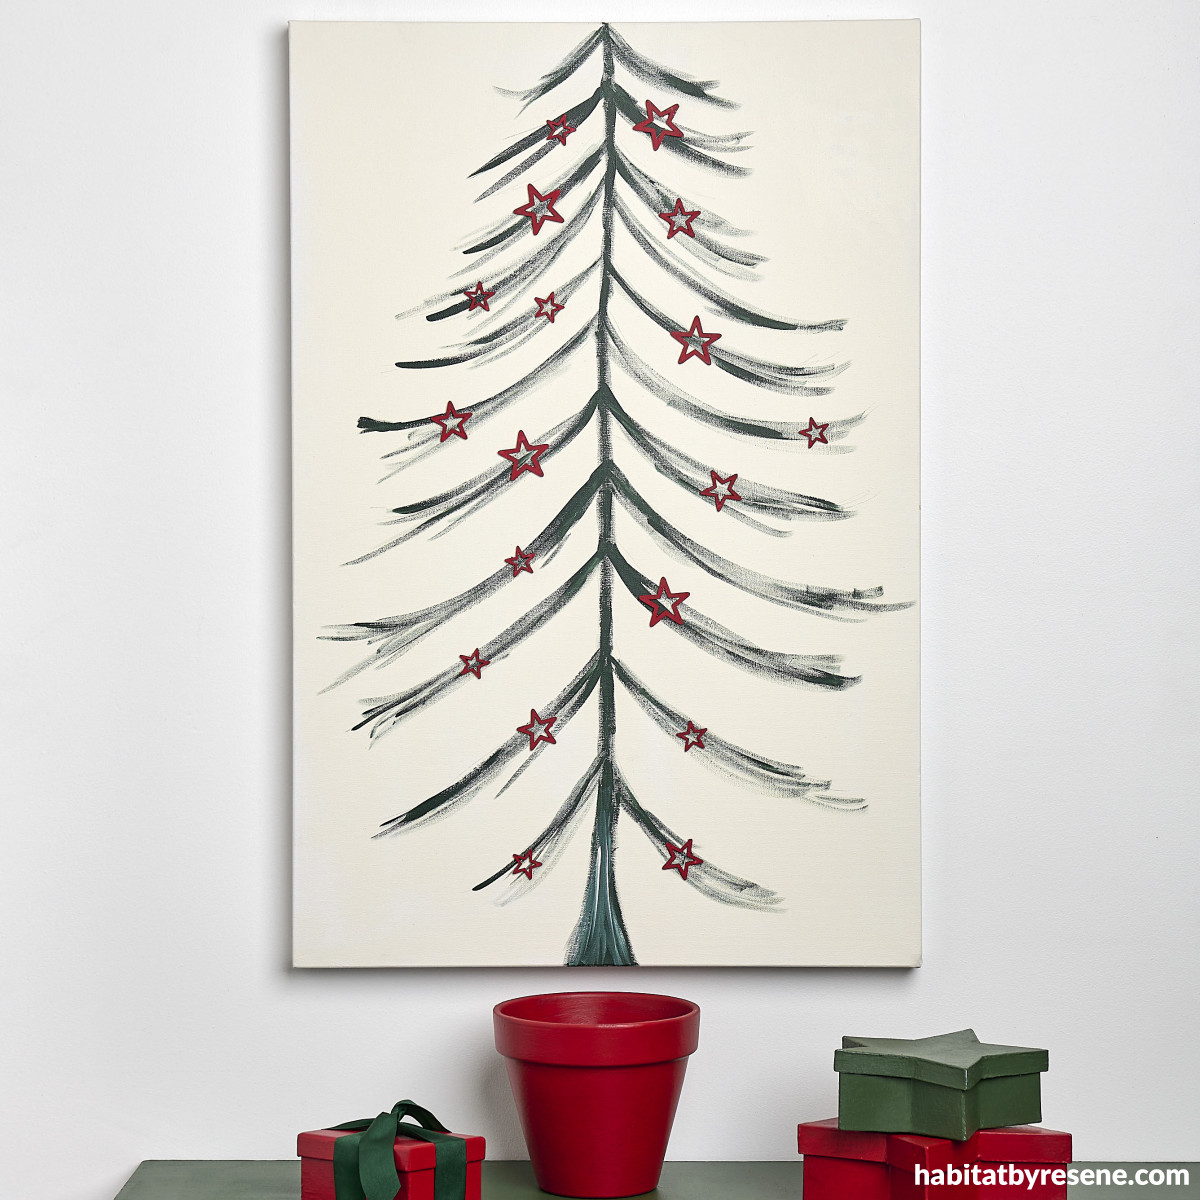 A brush of Christmas joy: Make your own festive artwork | Habitat by Resene